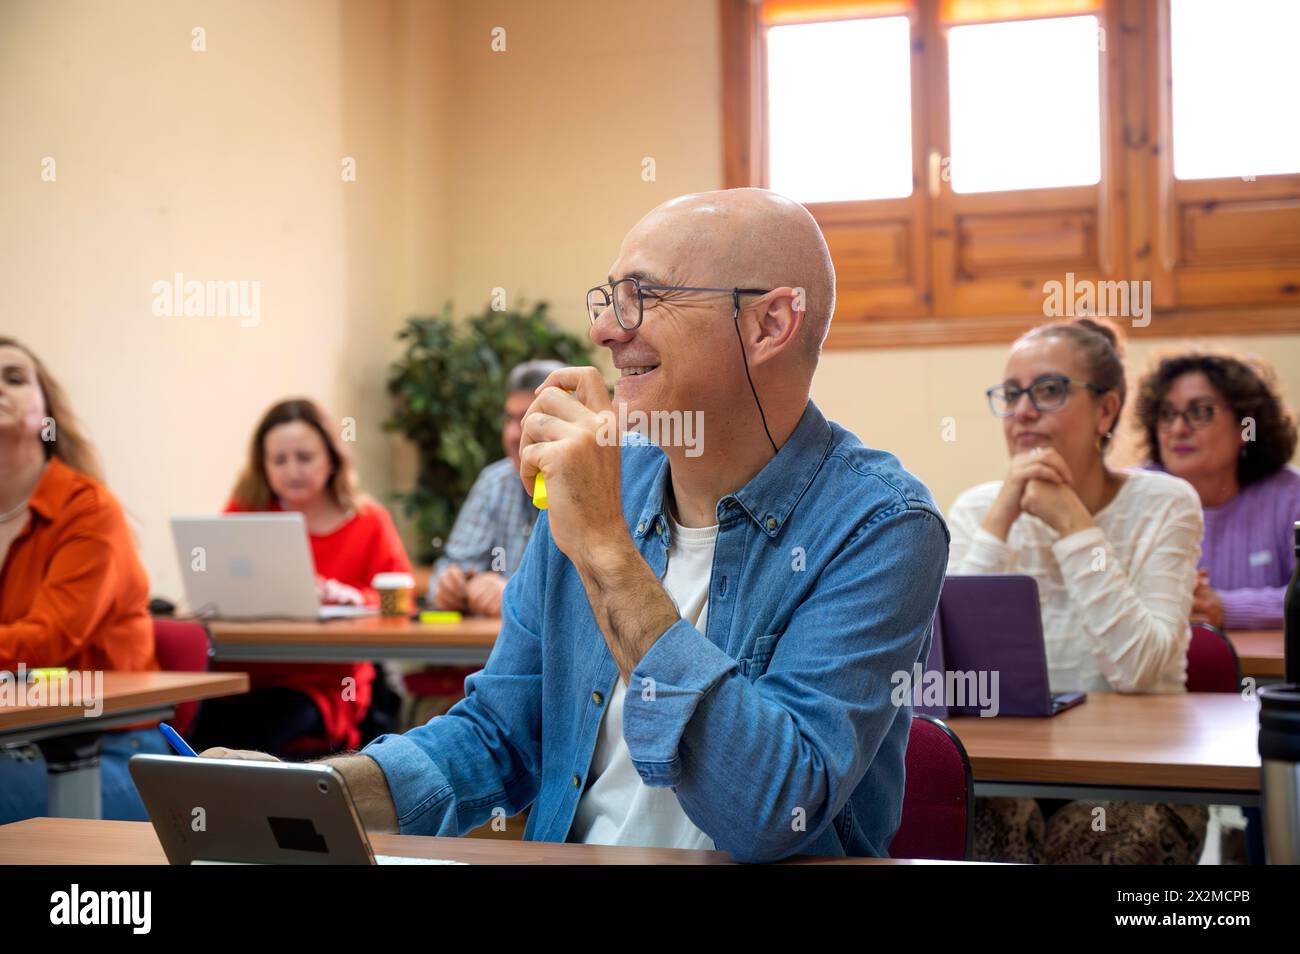 Un anziano sorridente che partecipa a una sessione di apprendimento con i colleghi in un ambiente scolastico, mostrando la gioia di continuare a studiare Foto Stock